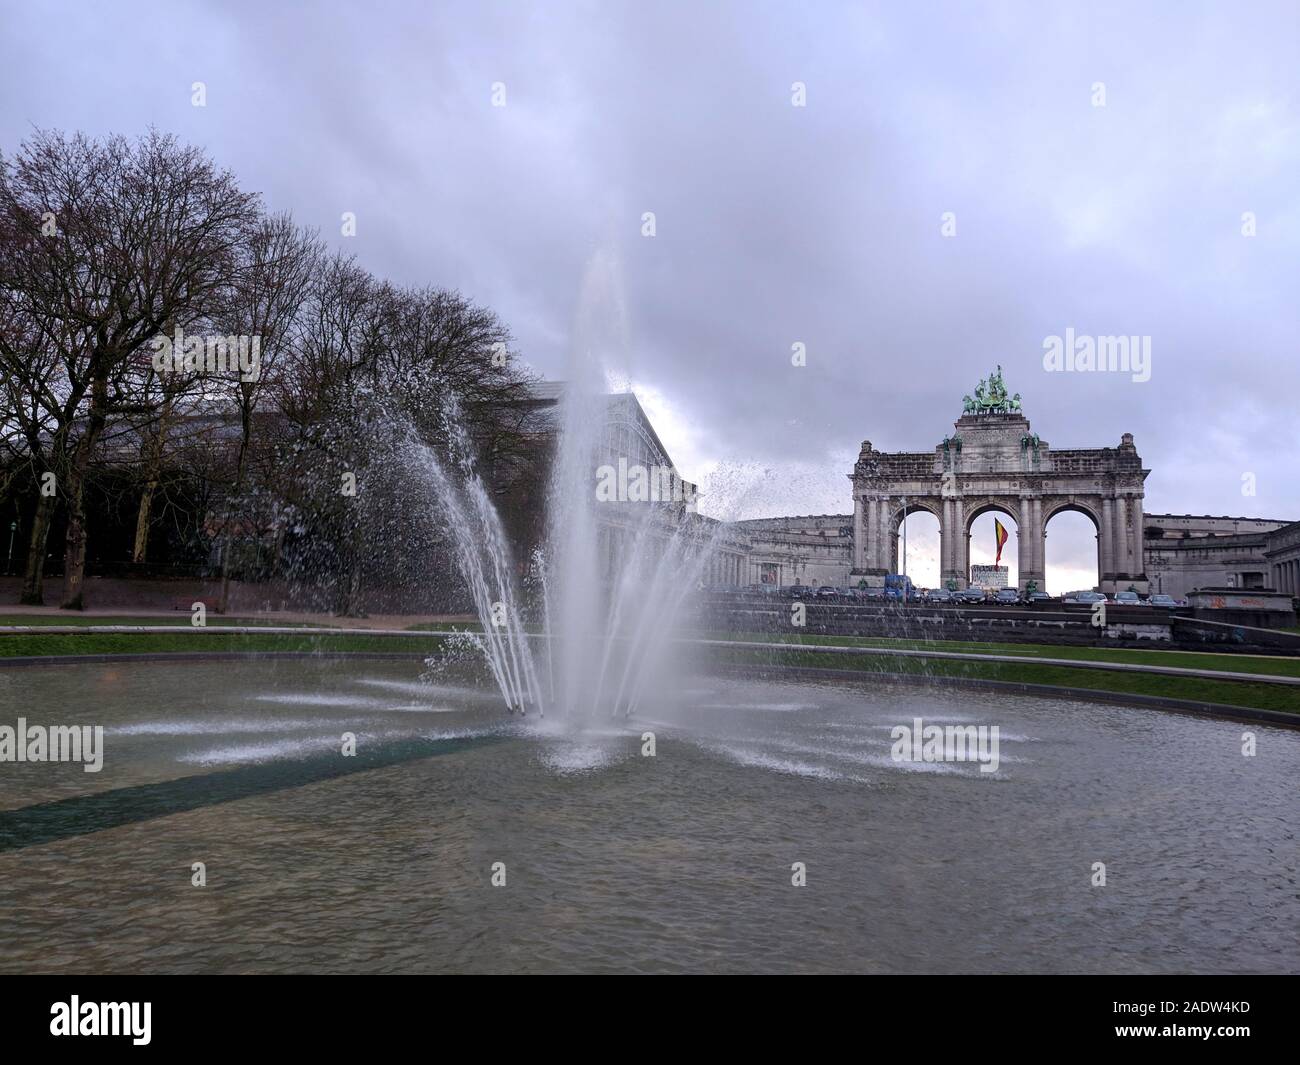 Parc du Cinquantenaire or Jubel park with centrepiece triumphal arch, Brussels, Belgium Stock Photo